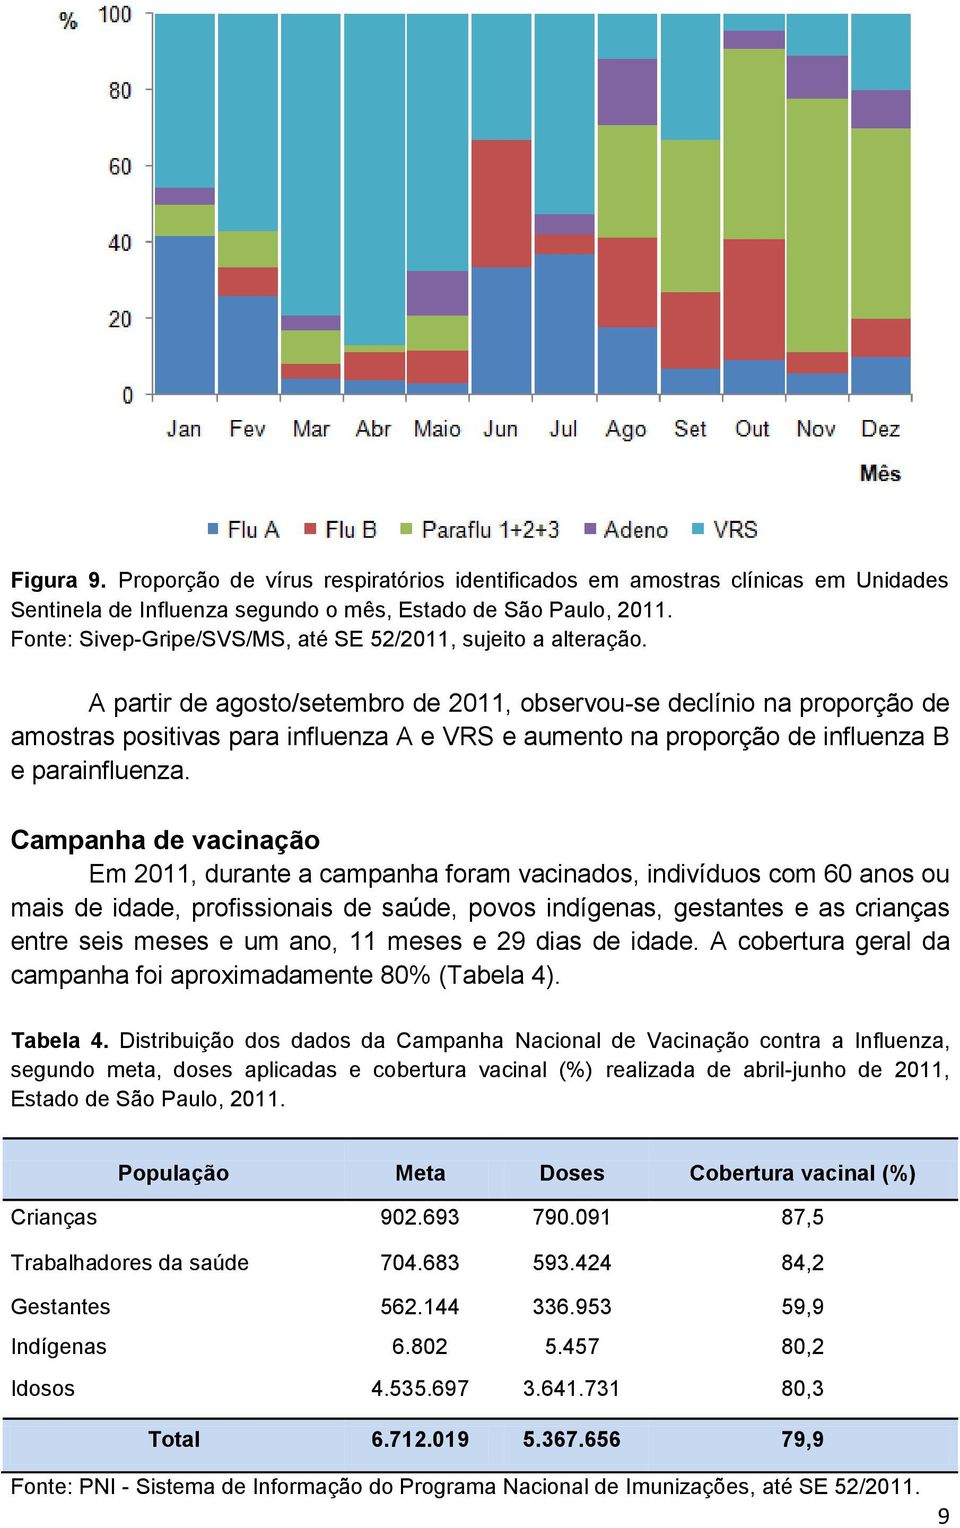 A partir de agosto/setembro de 2011, observou-se declínio na proporção de amostras positivas para influenza A e VRS e aumento na proporção de influenza B e parainfluenza.